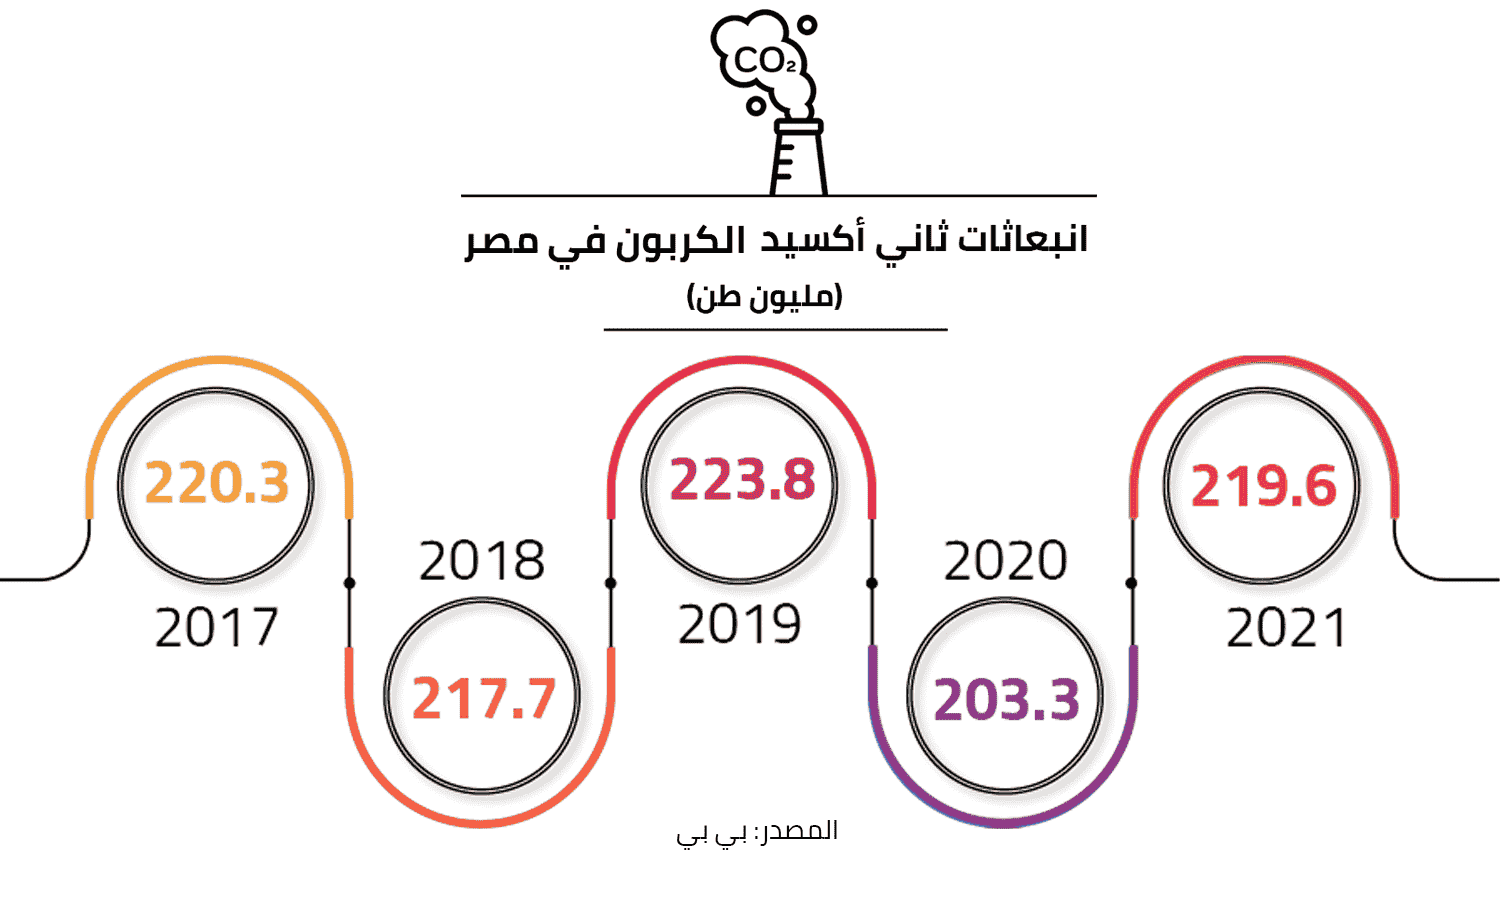 2019 هي الأعلى معدل في مصر بحجم انبعاثات ثاني أكسيد الكربون